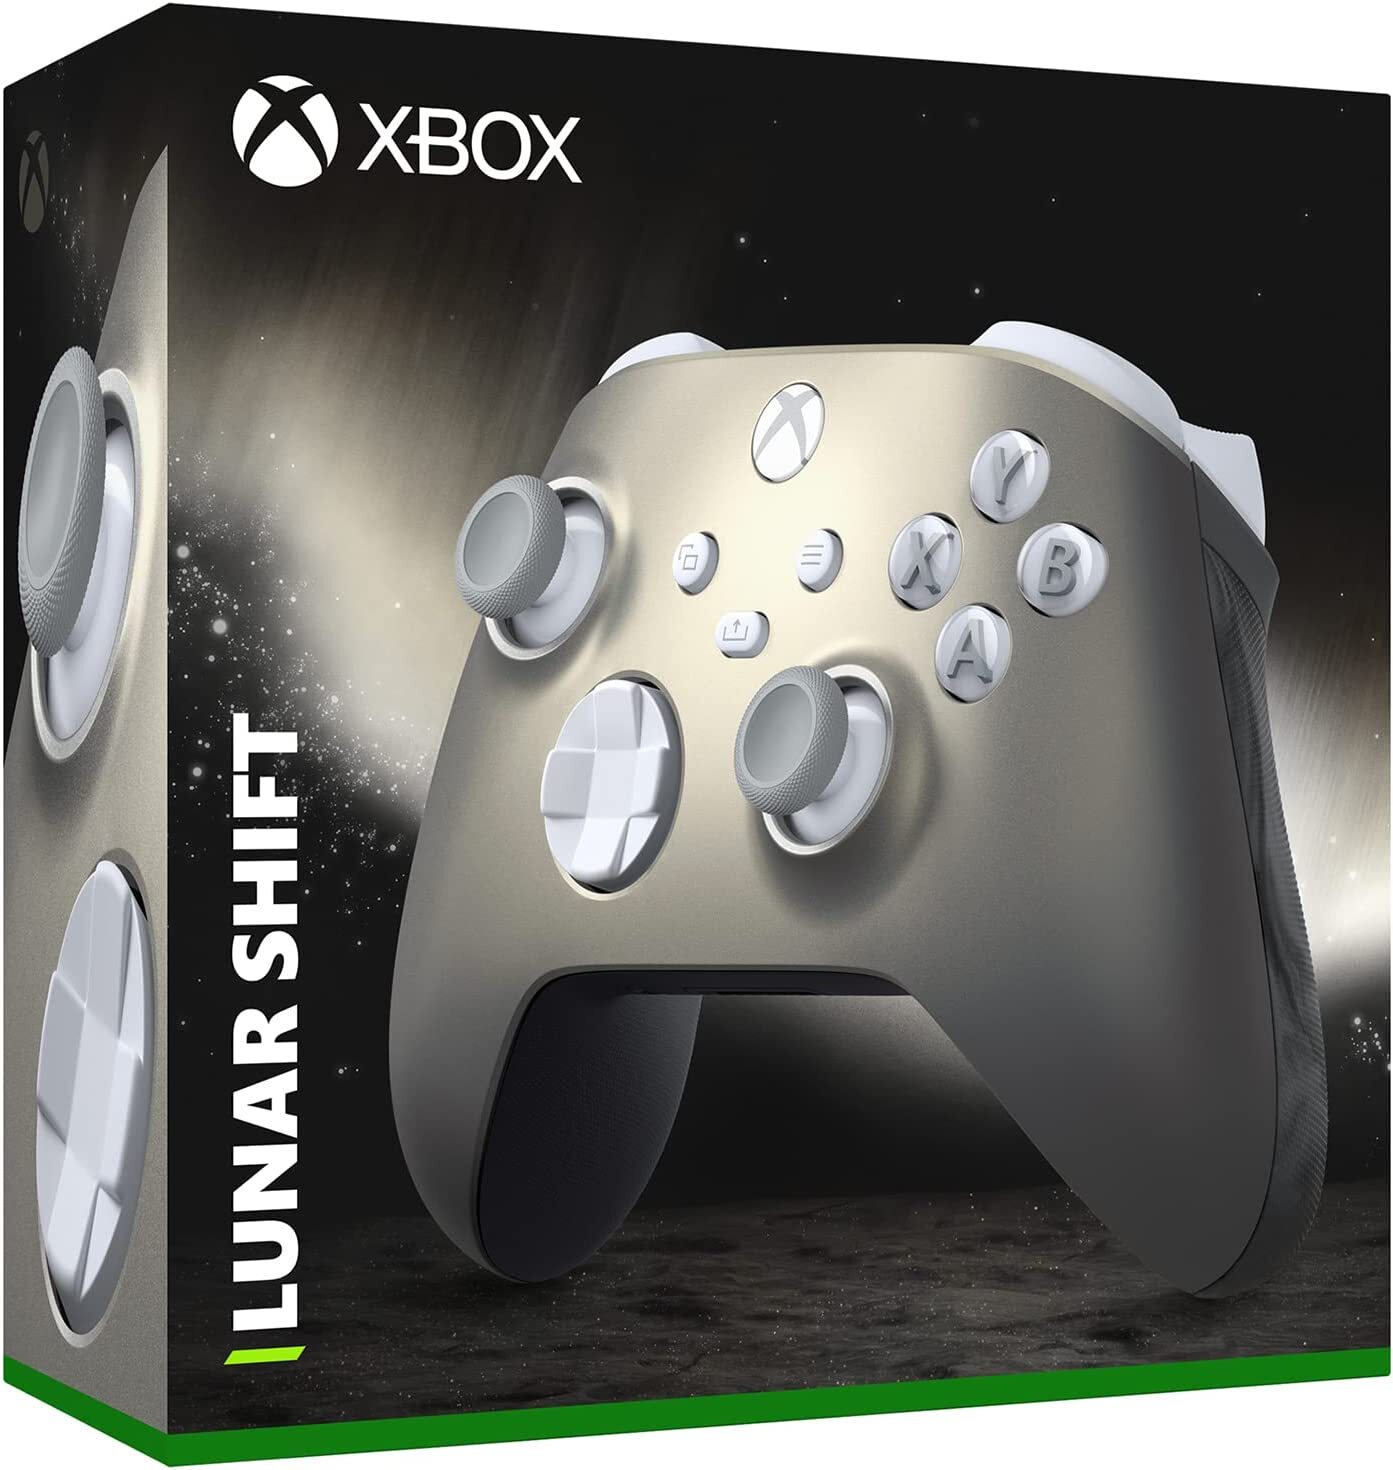 Imagem mostra suposto controle Lunar Shift para consoles Xbox